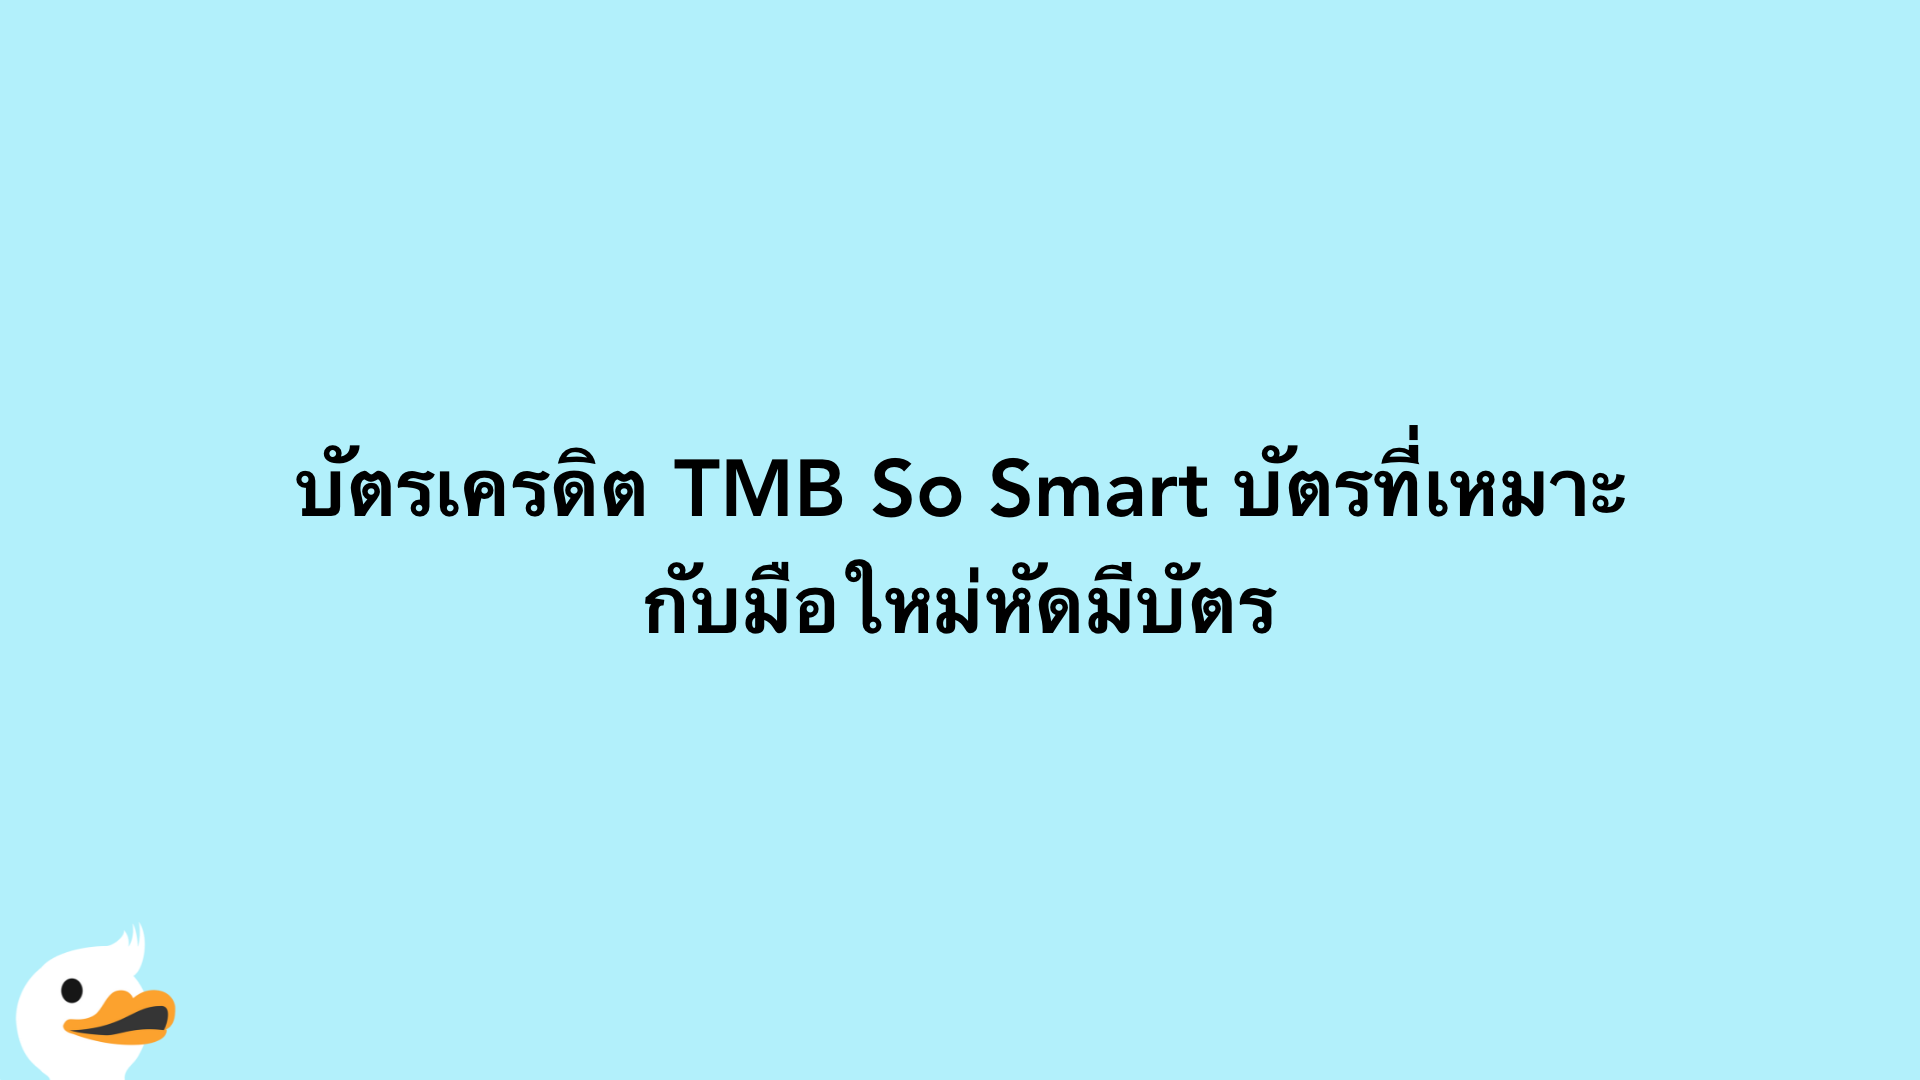 บัตรเครดิต TMB So Smart บัตรที่เหมาะกับมือใหม่หัดมีบัตร